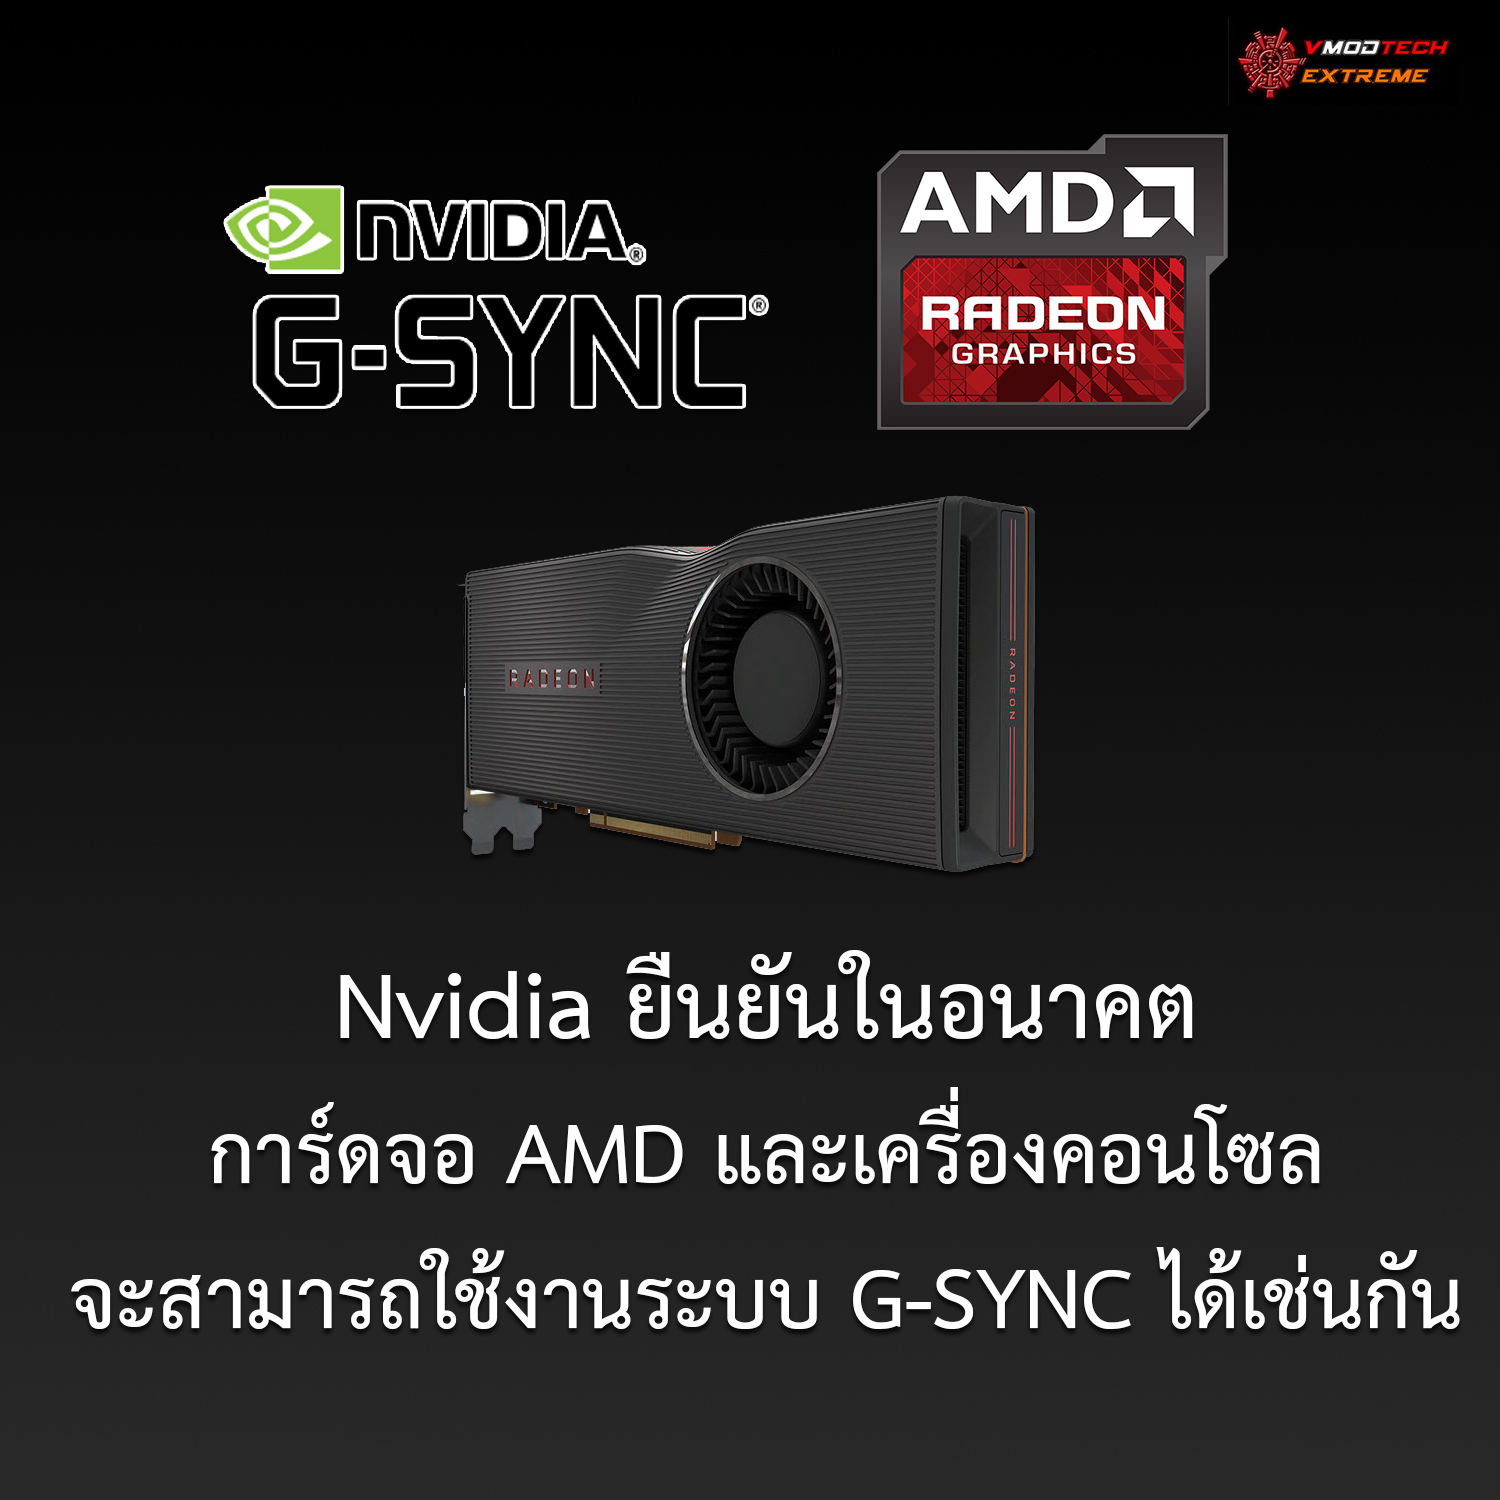 Nvidia ยืนยันในอนาคตการ์ดจอ AMD และเครื่องคอนโซลจะสามารถใช้งานระบบ G-SYNC ได้เช่นกัน